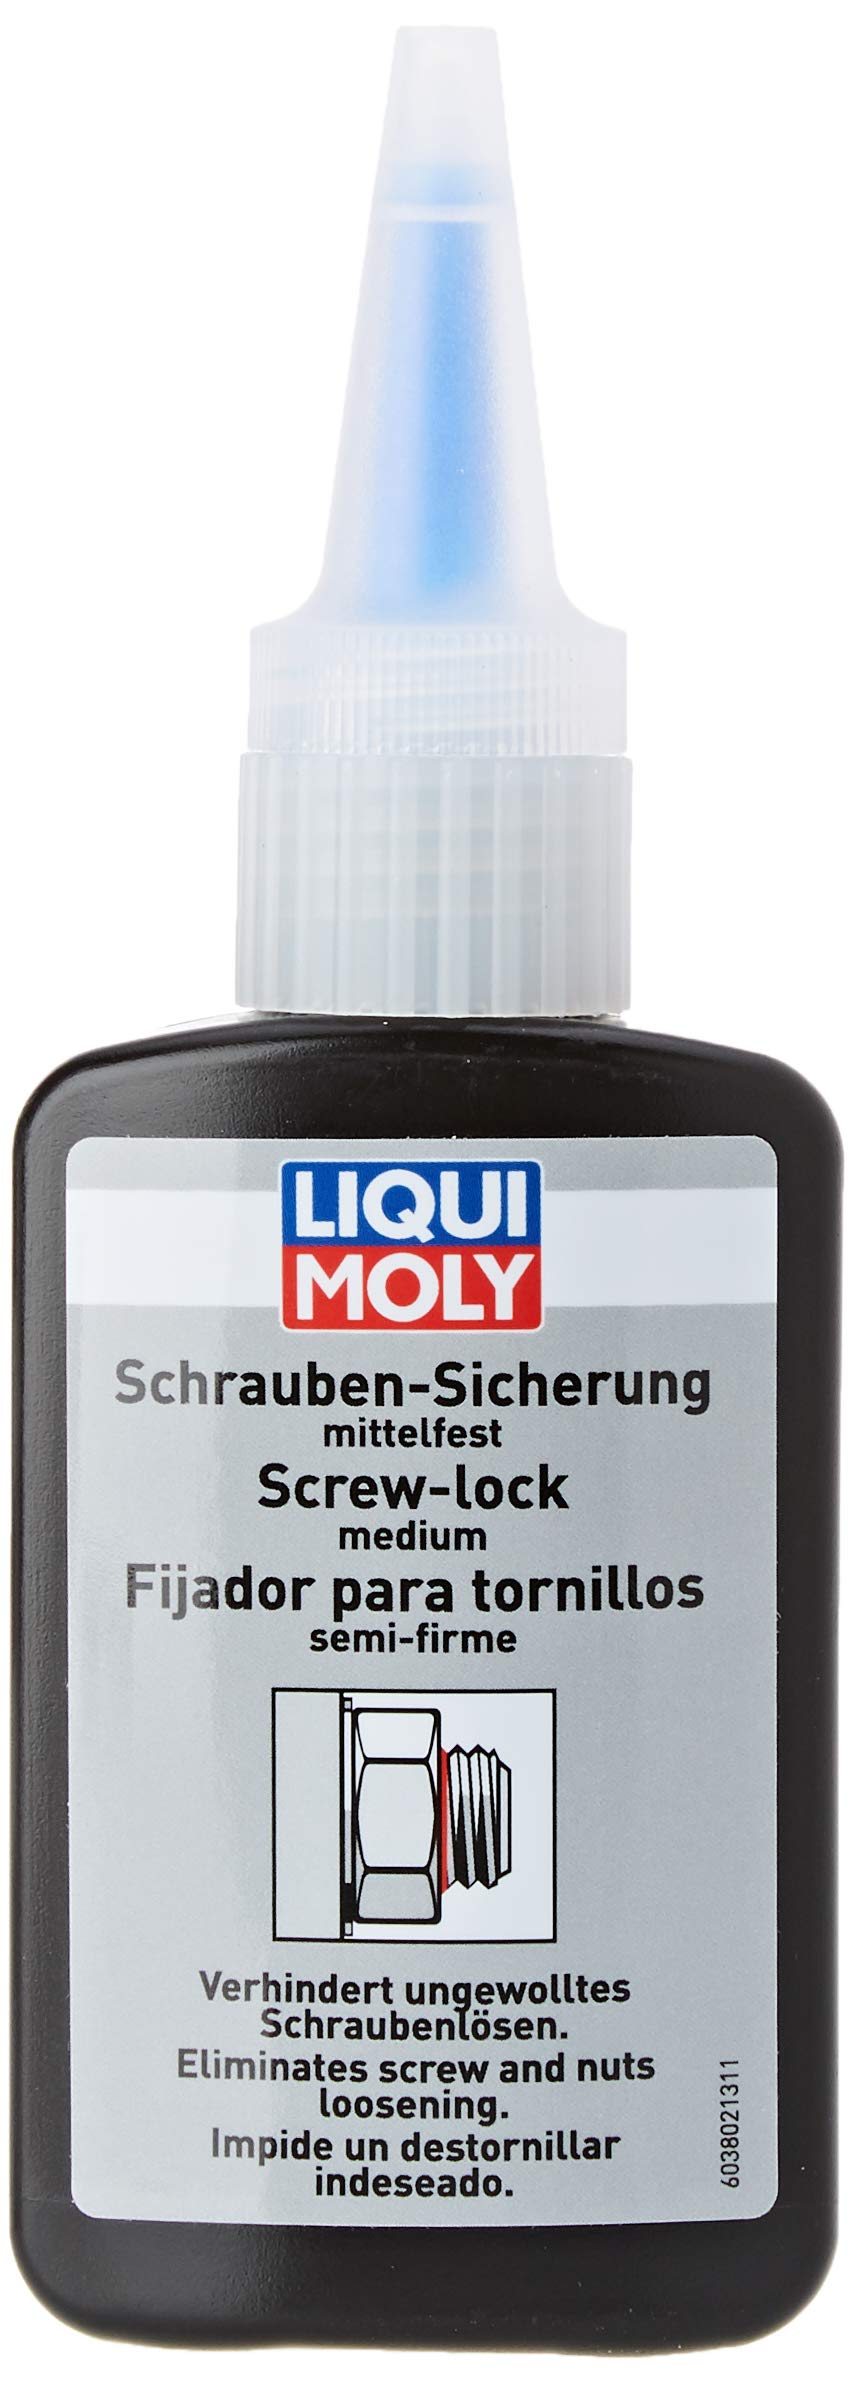 LIQUI MOLY Schraubensicherung mittelfest | 50 g | Schraubensicherung | Art.-Nr.: 3802, Grau, Farblos von Liqui Moly